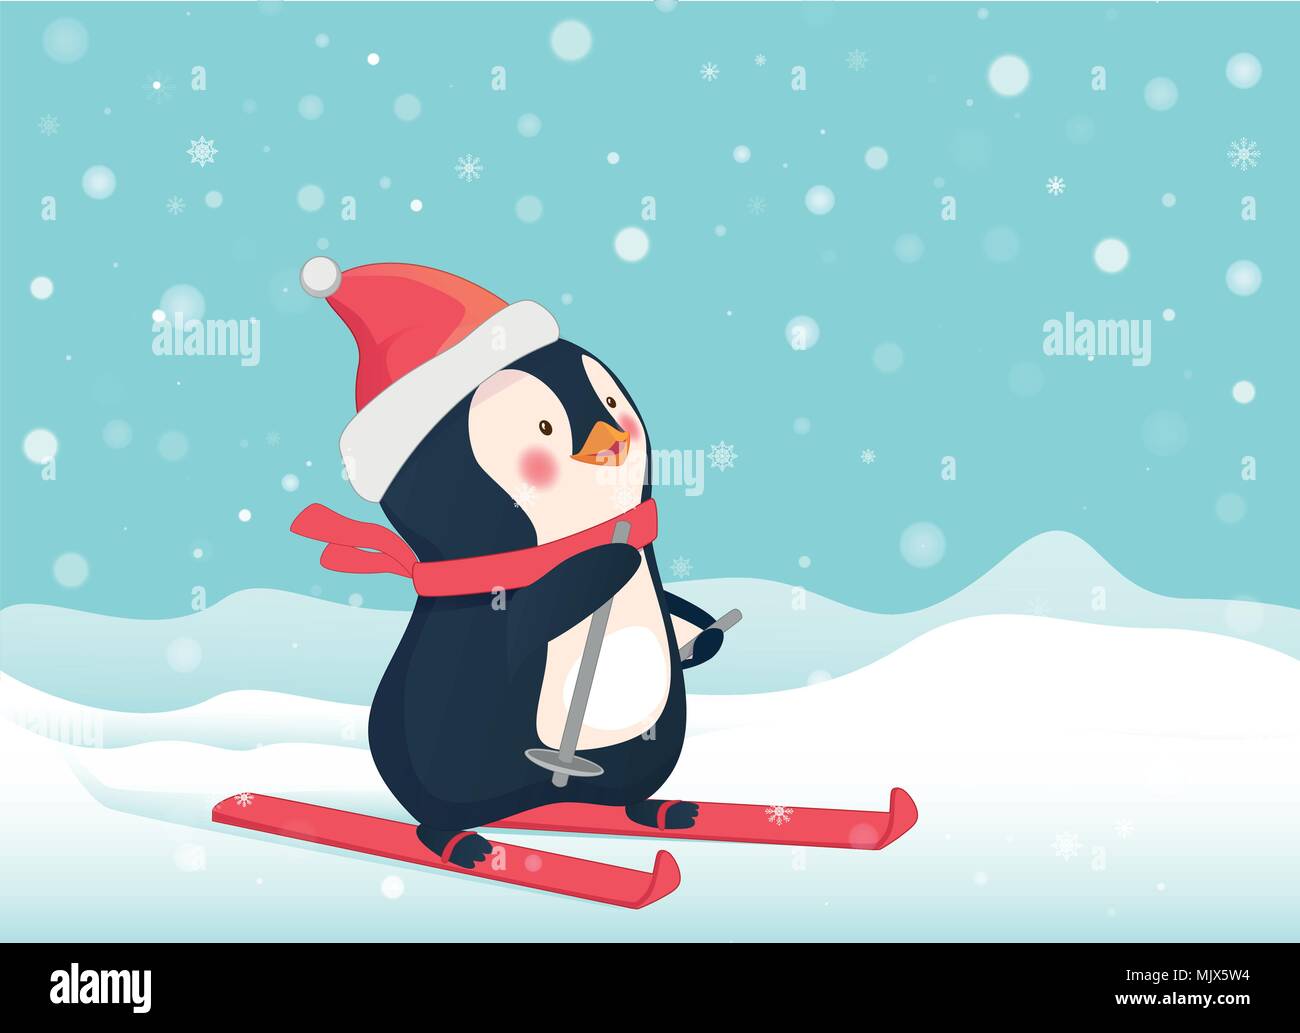 penguin on skis Stock Vector